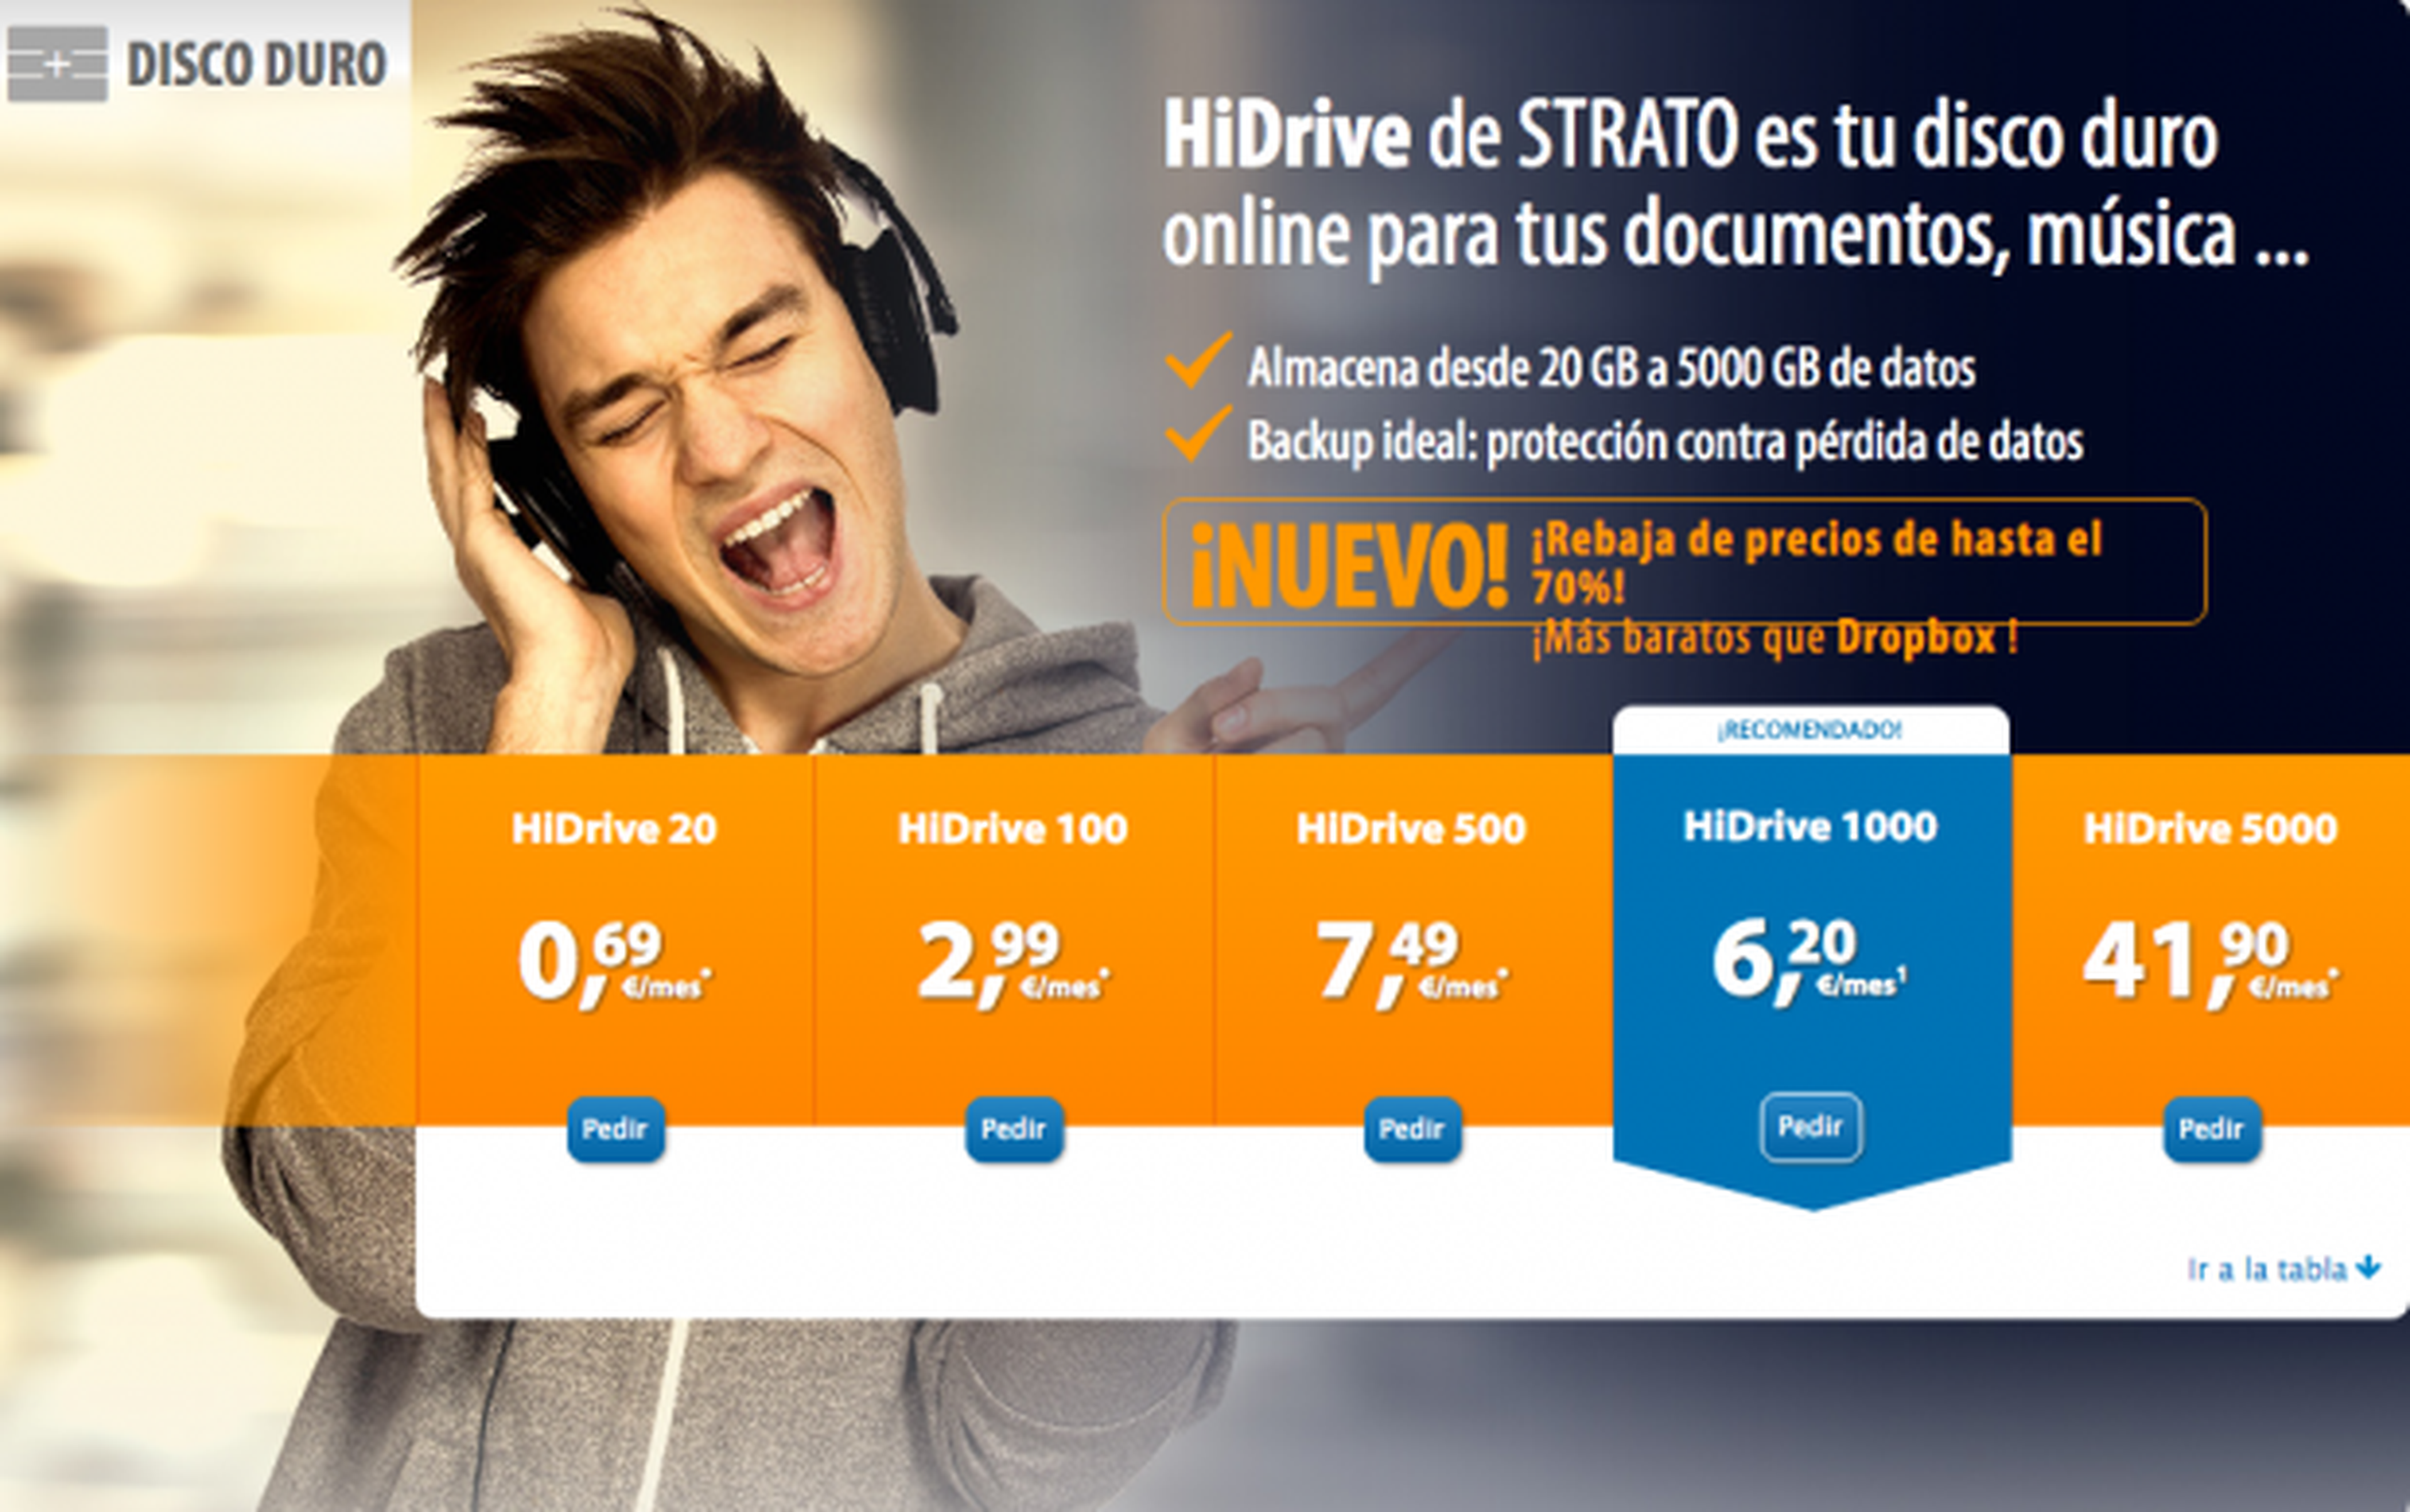 El almacenamiento online de HiDrive, más barato que Dropbox